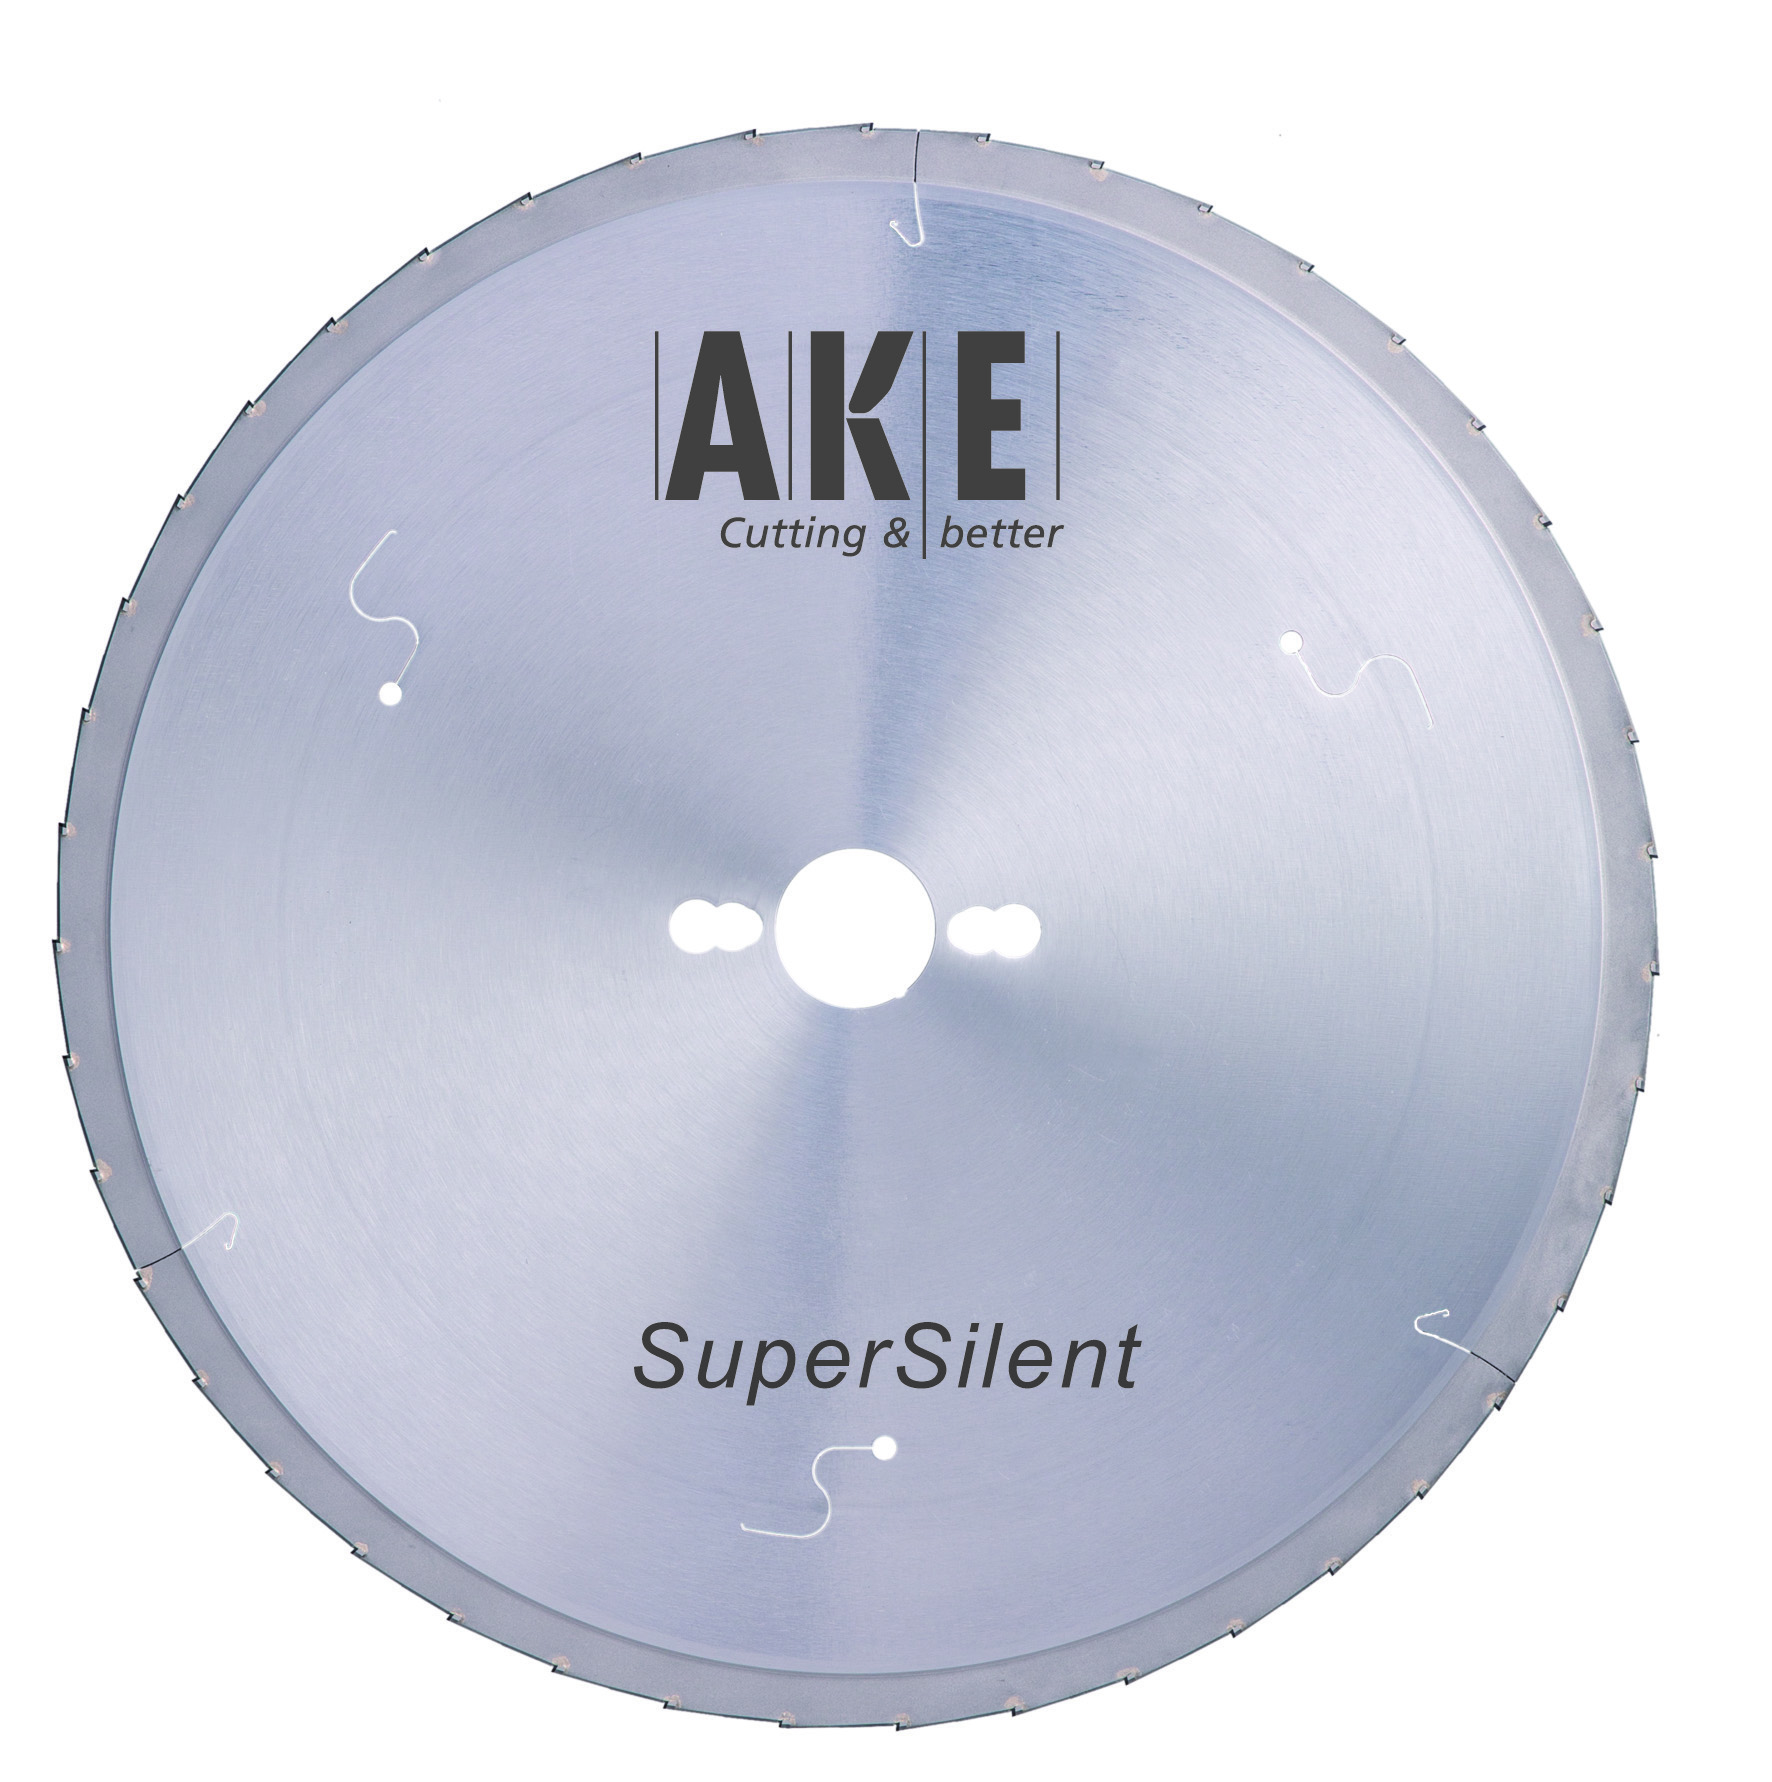 Nuevo disco SuperSilent